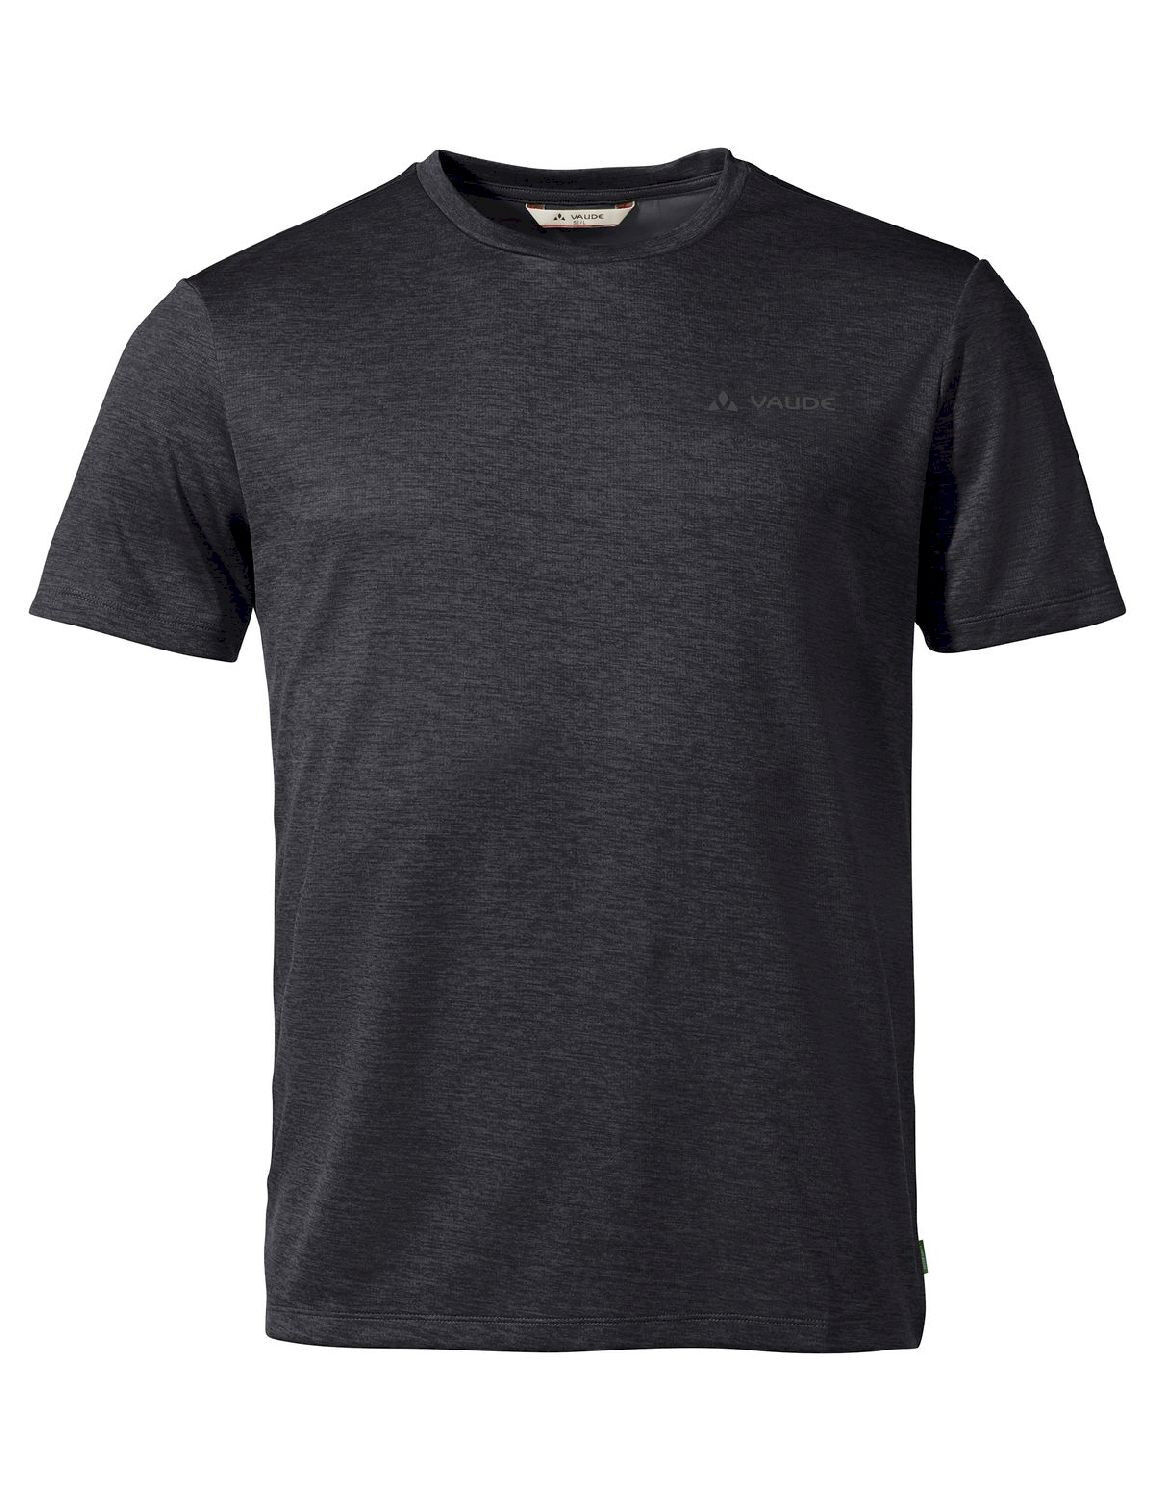 Vaude Essential T-Shirt - Funktionsunterwäsche - Herren